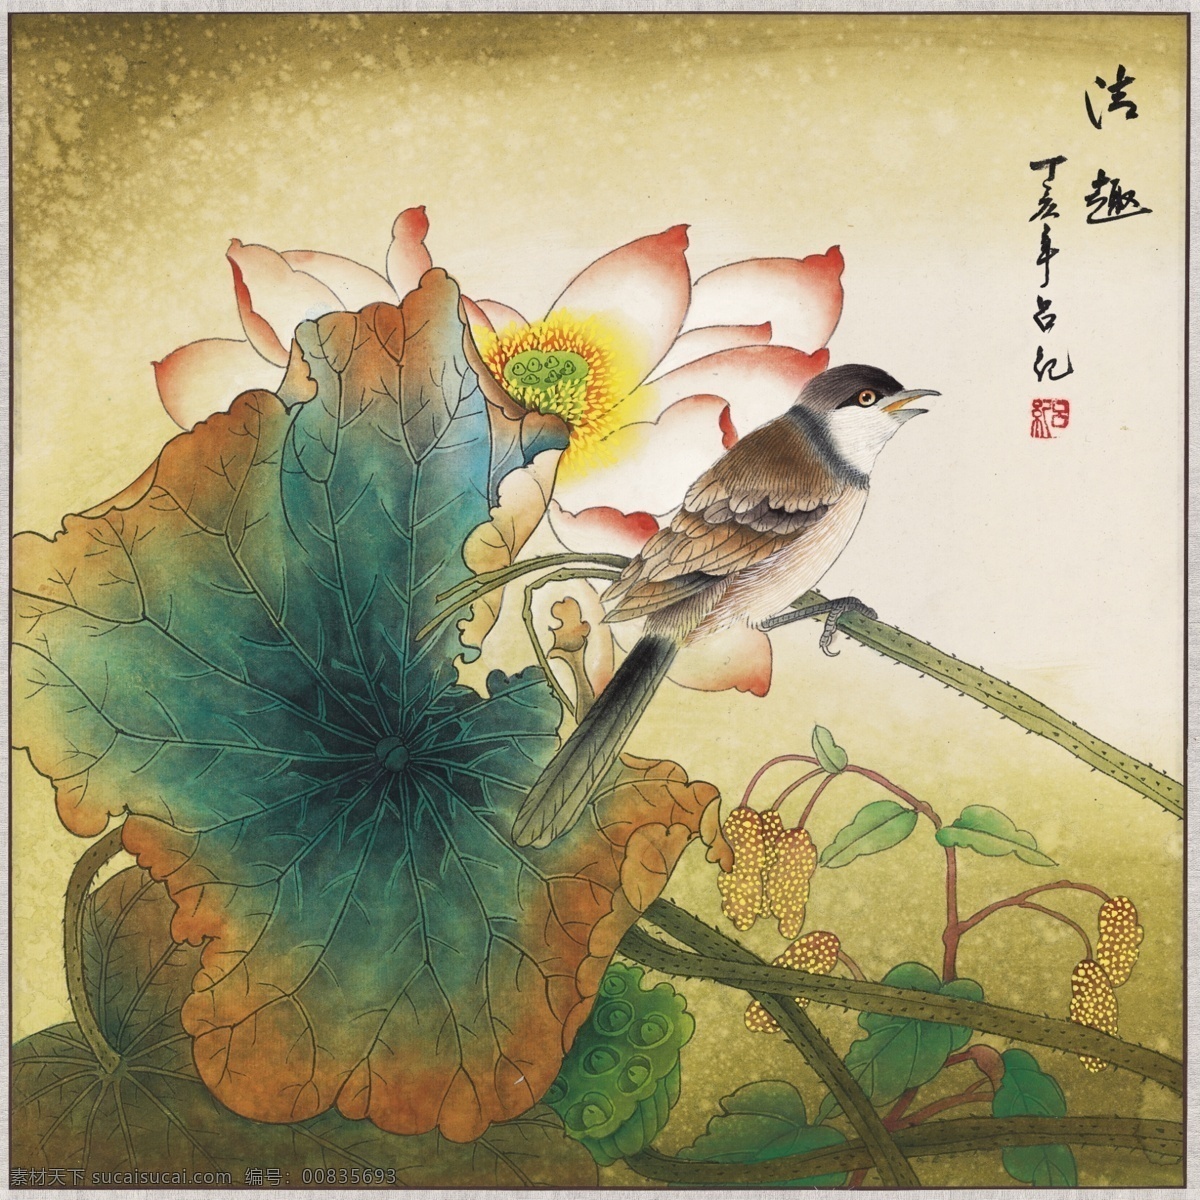 中式 古典 花鸟 工笔画 中国风绘画 精美绘画 植物花鸟 装饰画 古典画 牡丹花朵 文化艺术 美术绘画